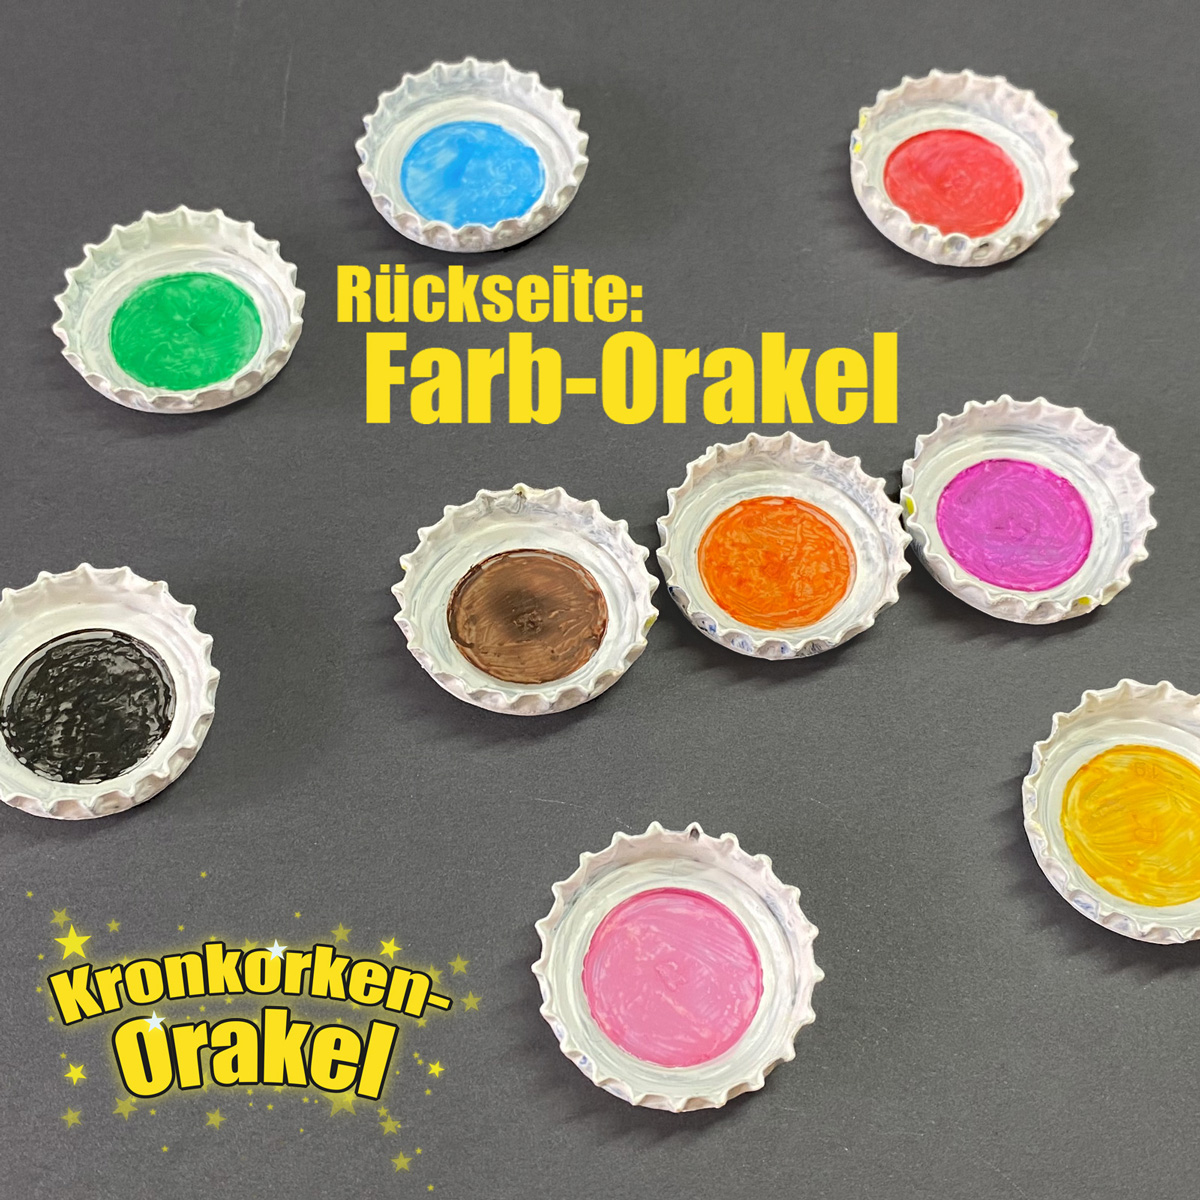 Rückseite der Kronkorken ist ein Farb-Orakel mit neu verschiedenen Farbpunkten.